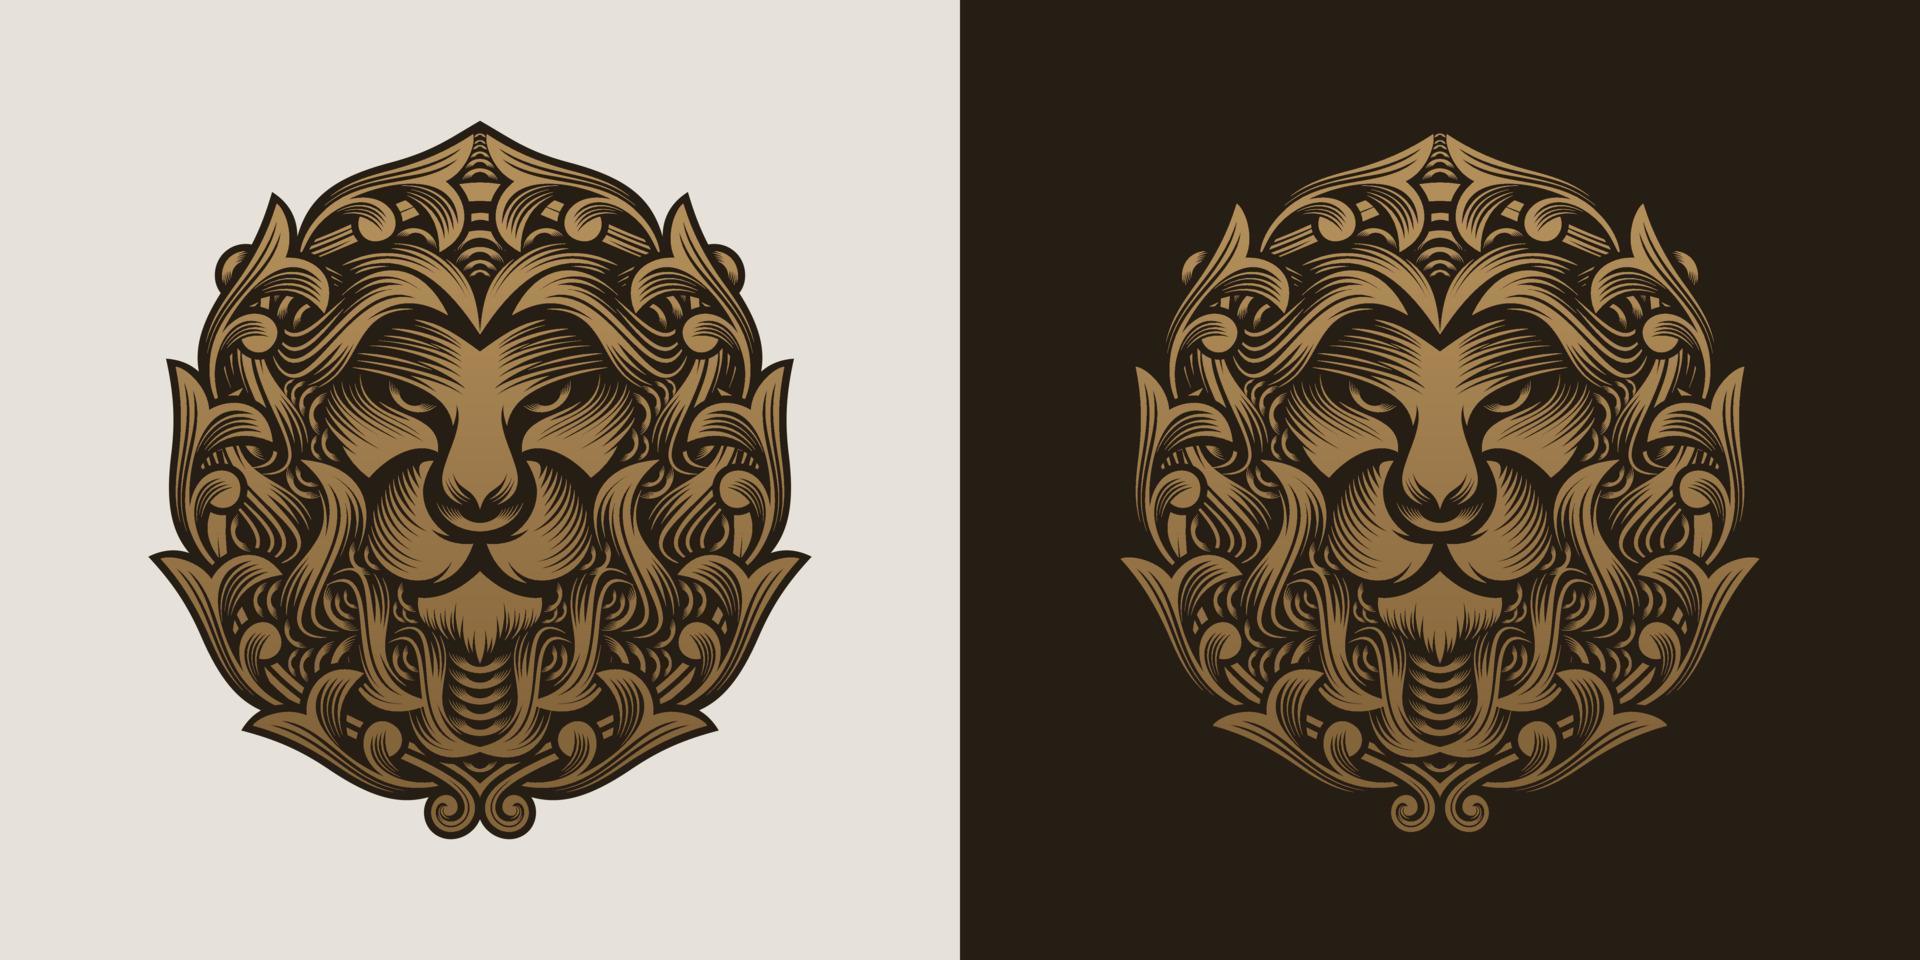 design de logotipo de cabeça de leão vetor